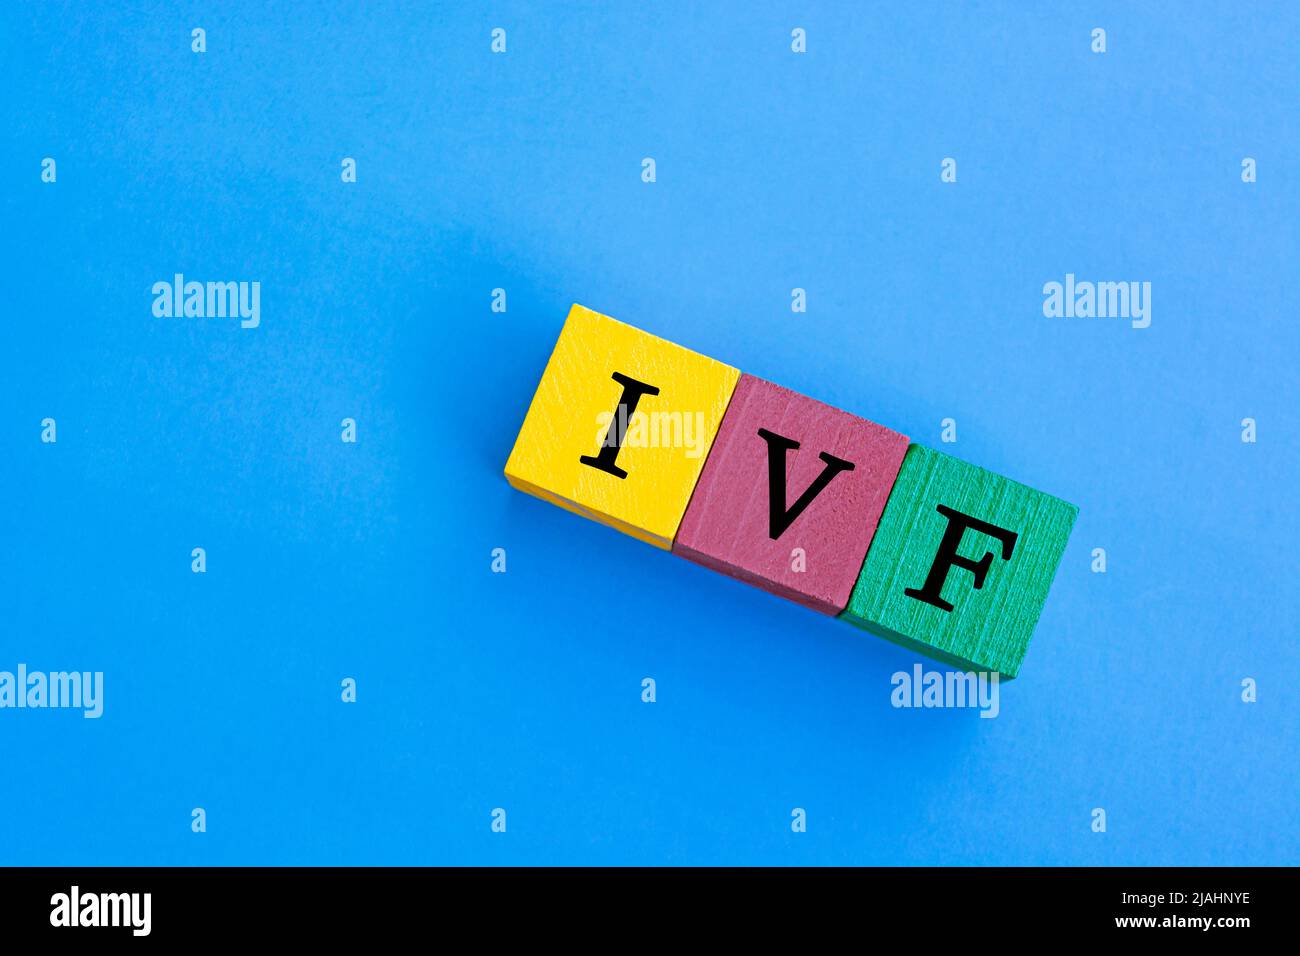 IVF - In Vitro Fertilization acrónimo en cubos de bloques de madera de colores Foto de stock